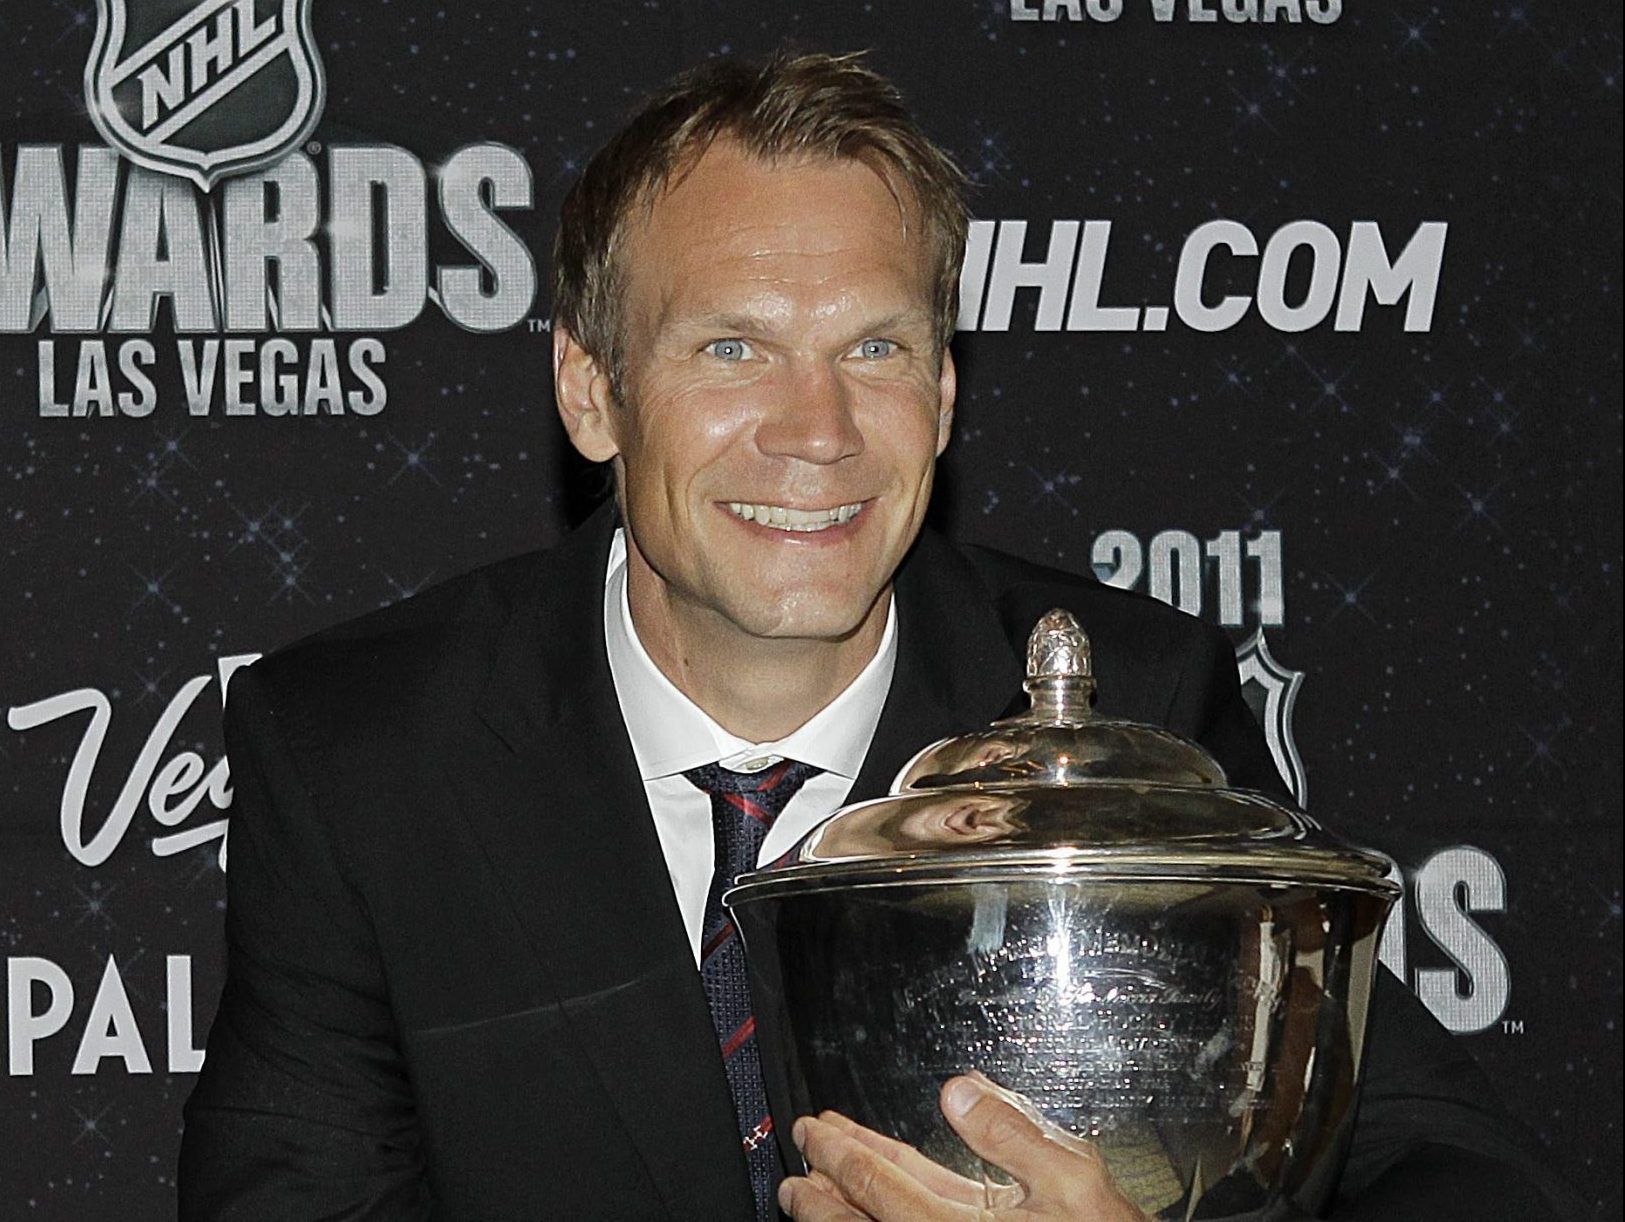 Red Wings hire Nicklas Lidstrom as VP of hockey operations